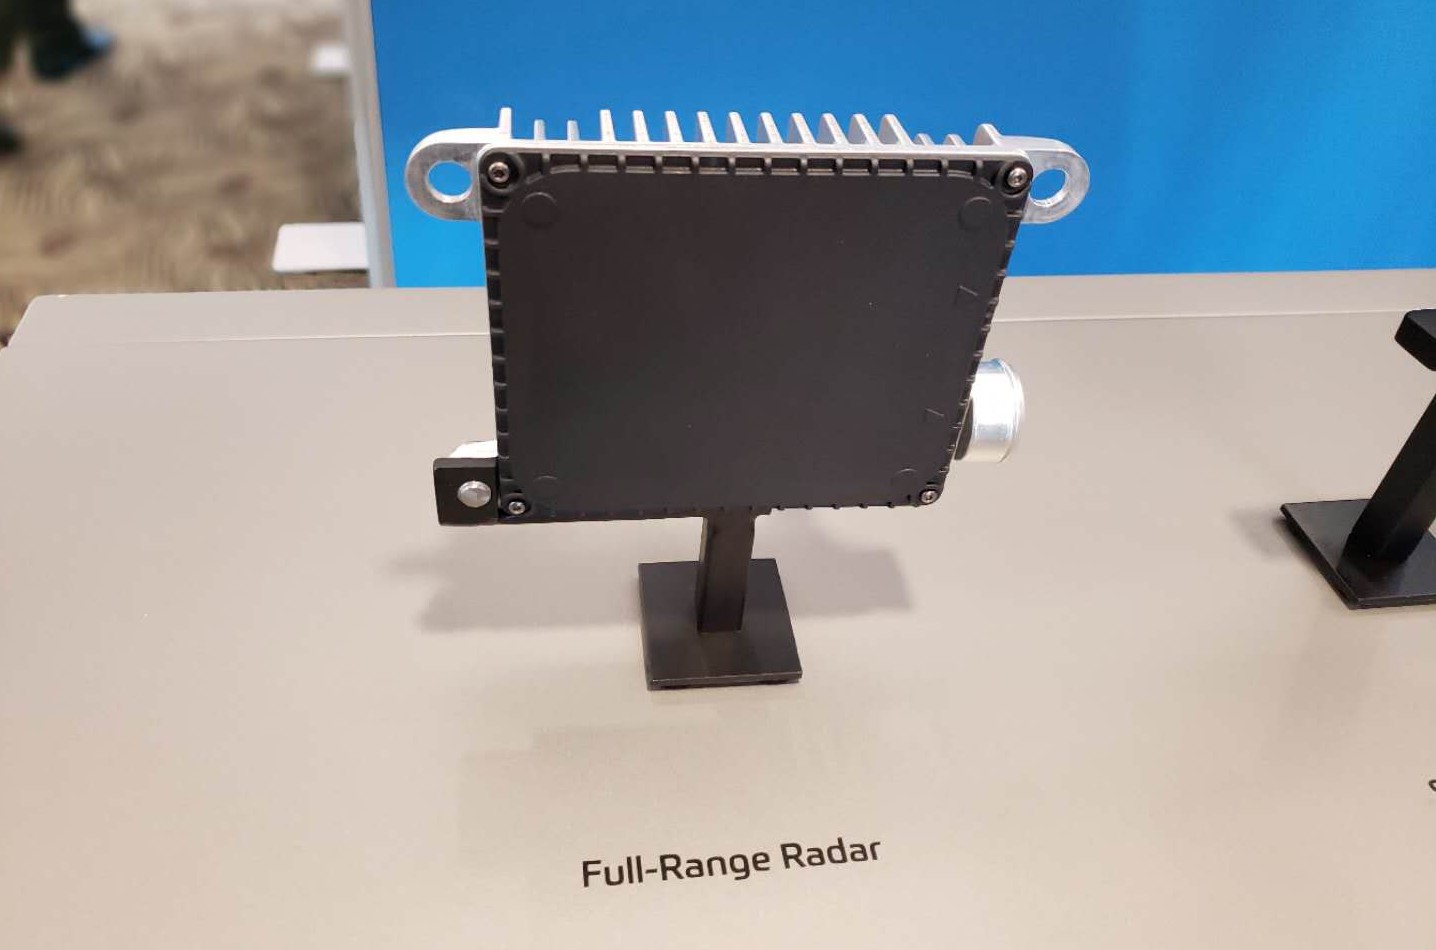 Full-Range Radar